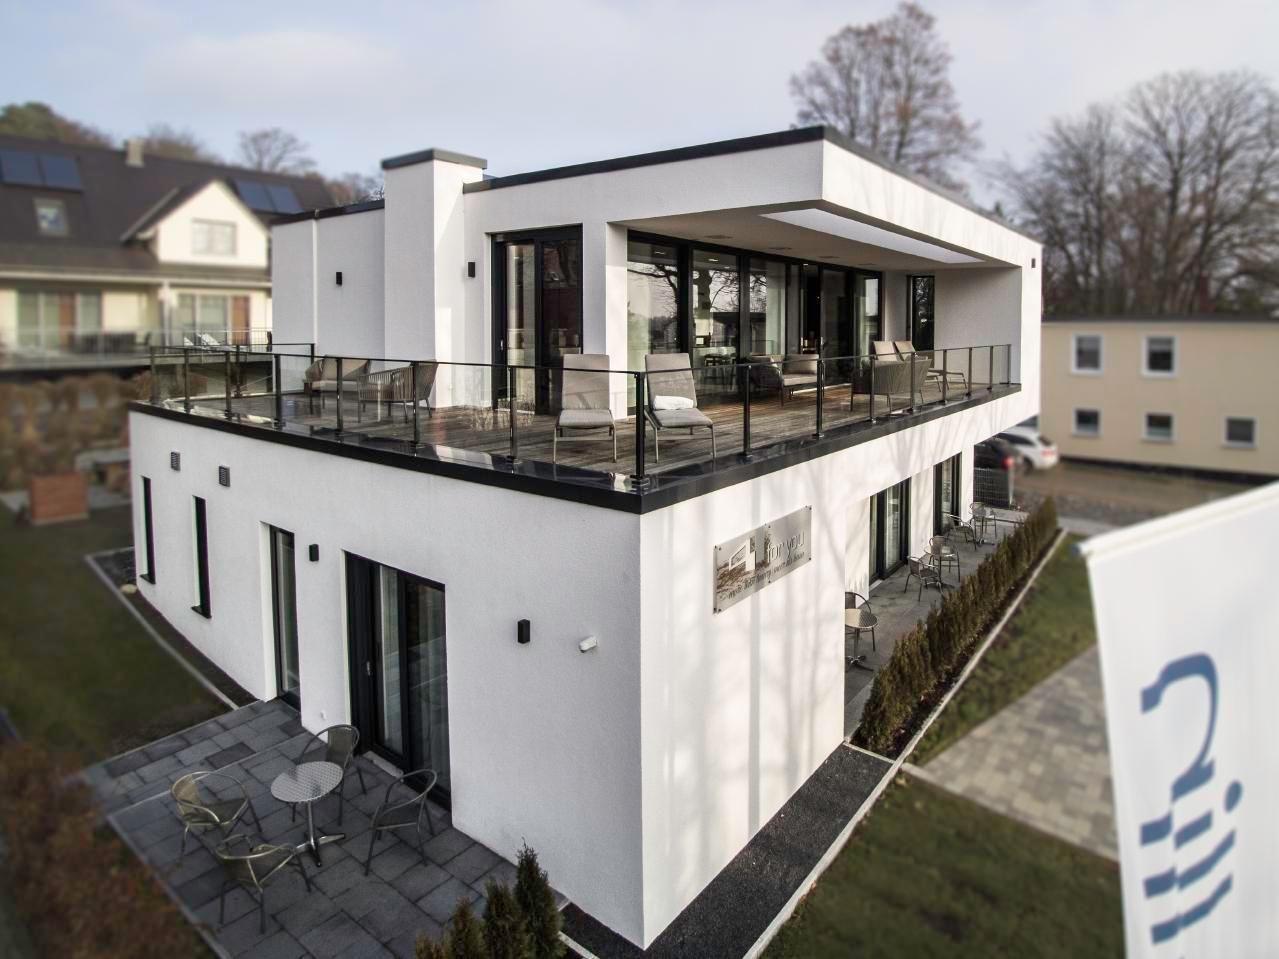 Ferienhaus in Sellin mit Terrasse, Grill und Garte  in Mecklenburg Vorpommern